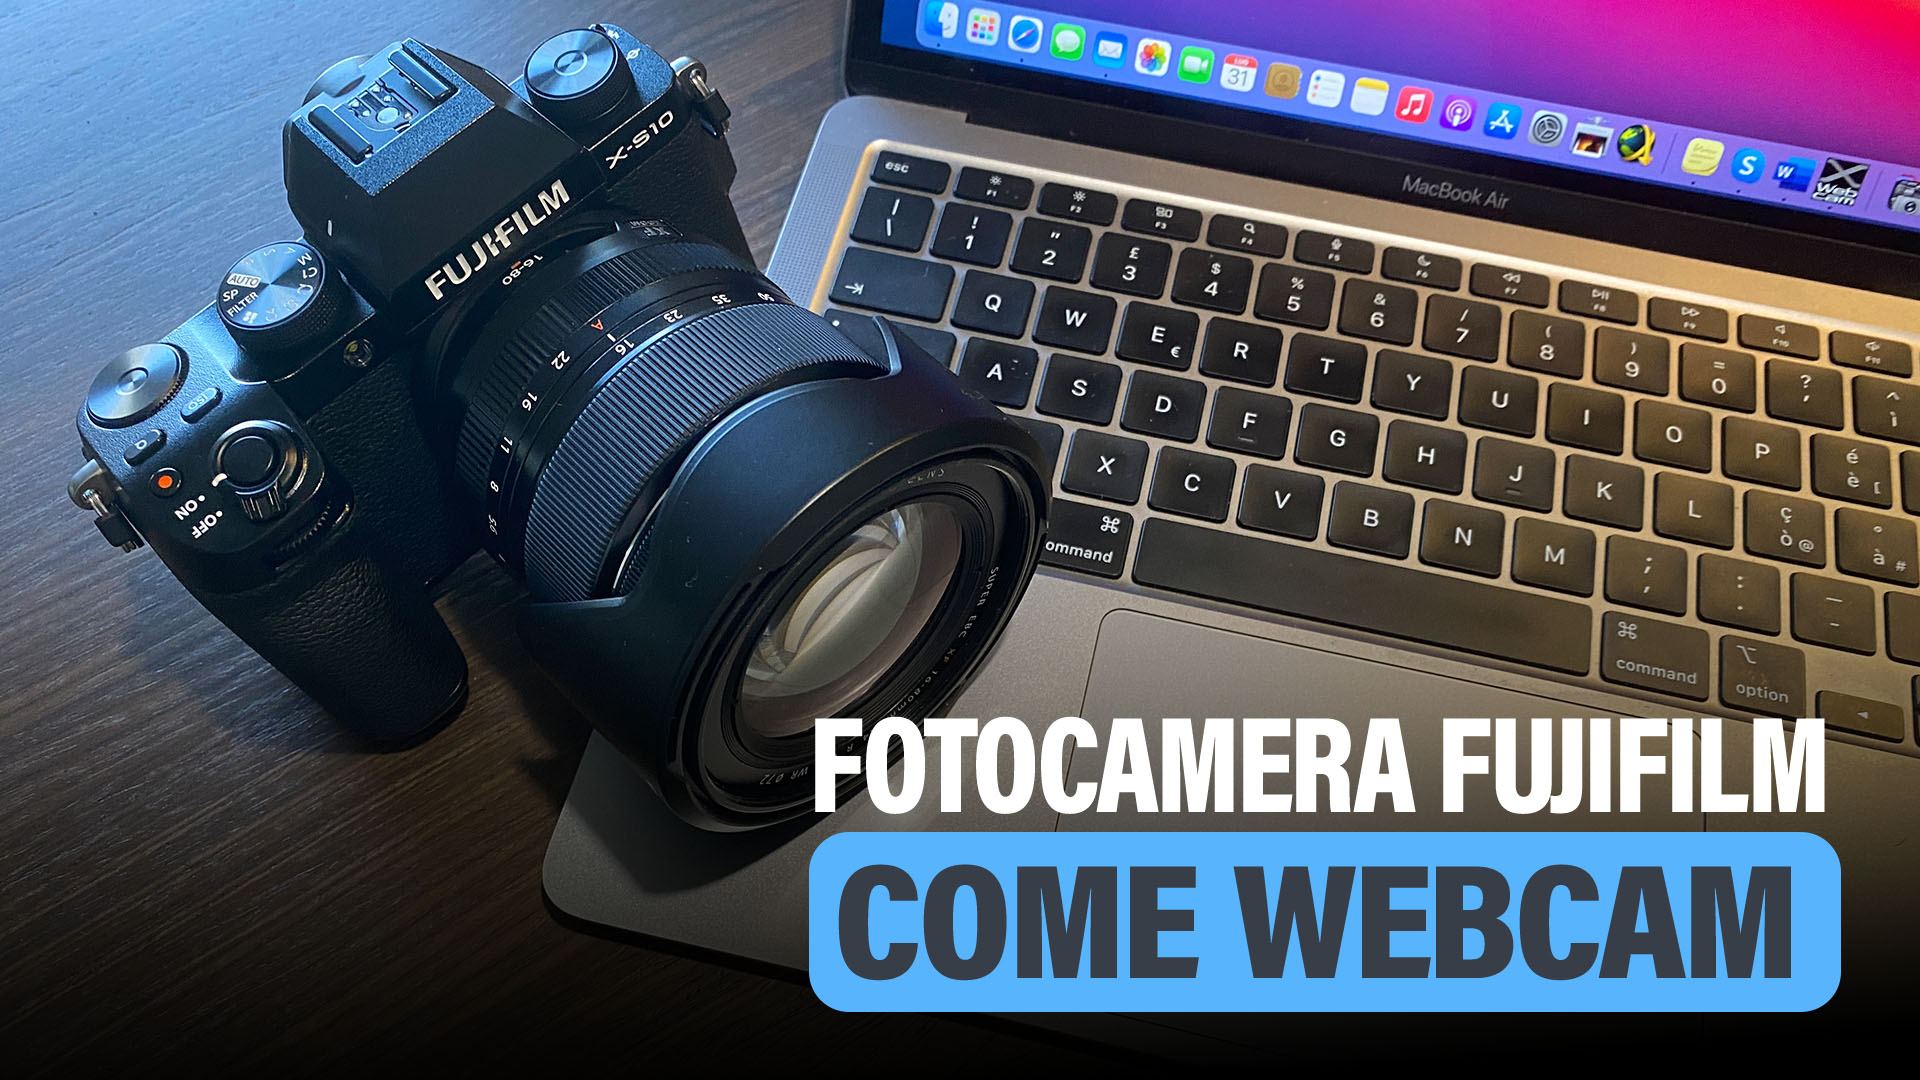 Usare-fotocamera-FUJIFILM-come-webcam